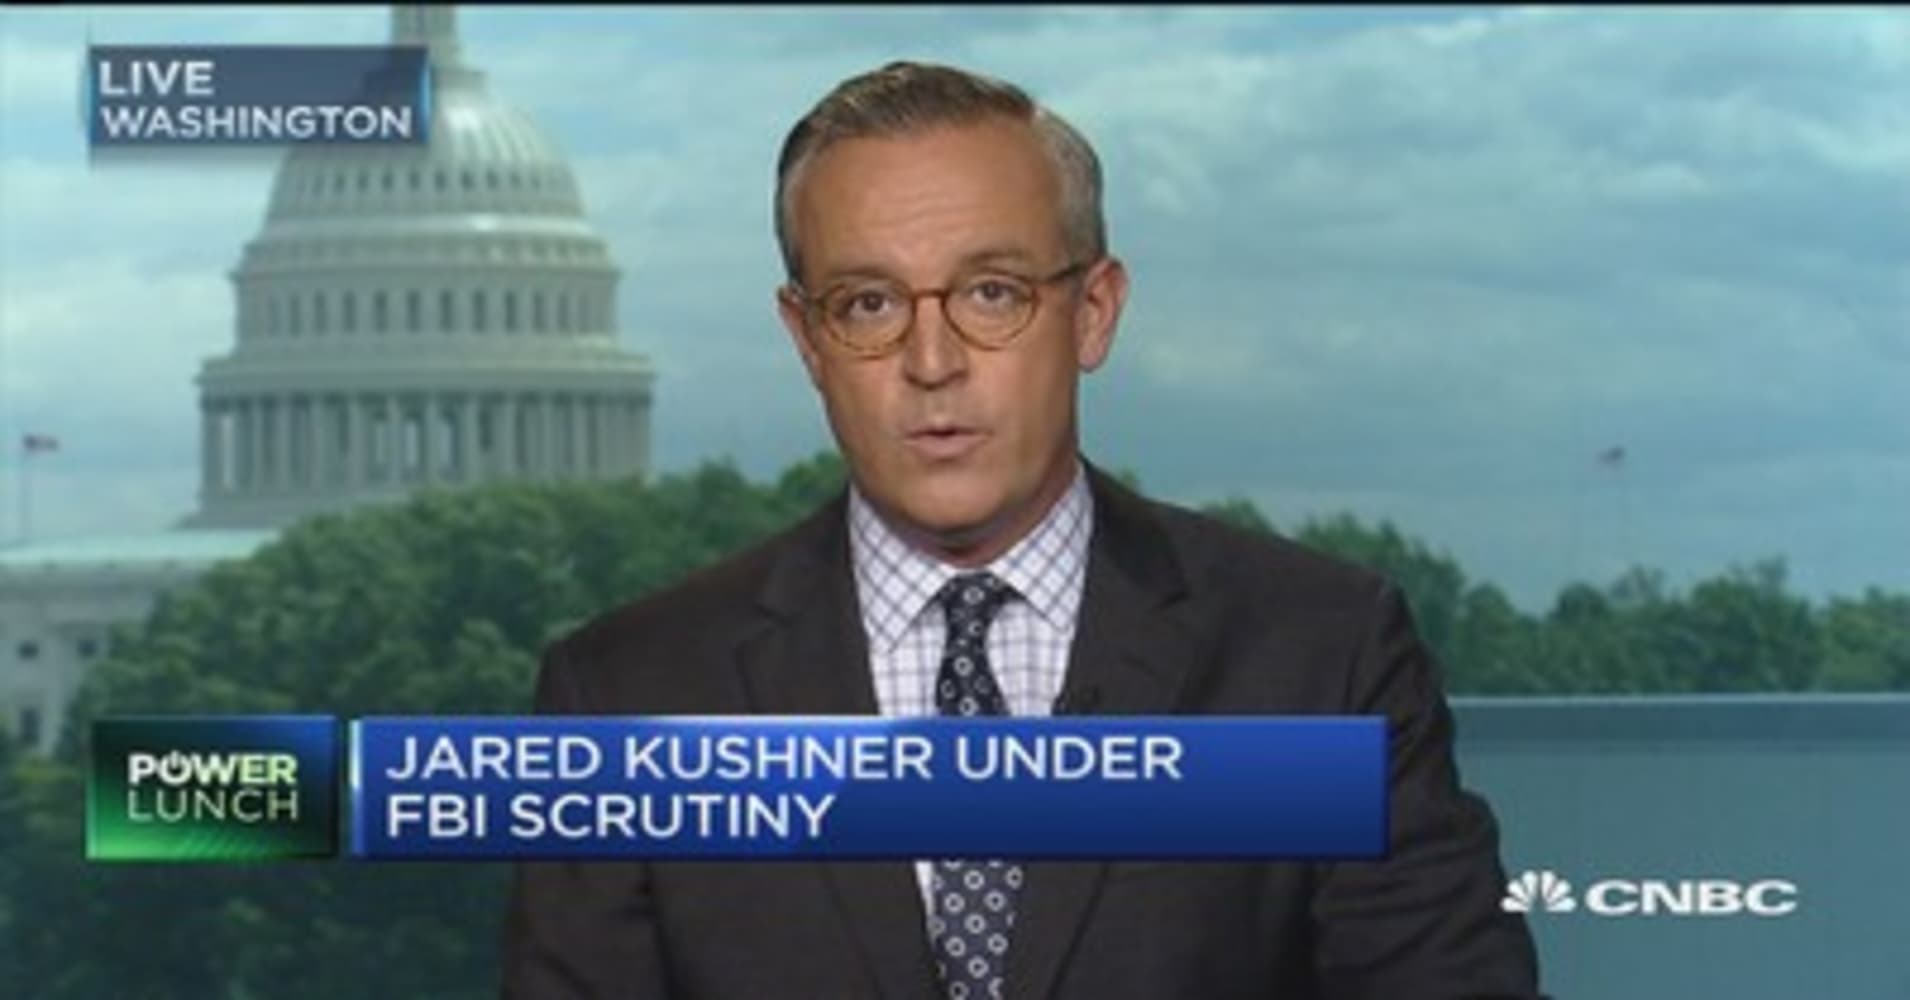 Jared Kushner under FBI scrutiny